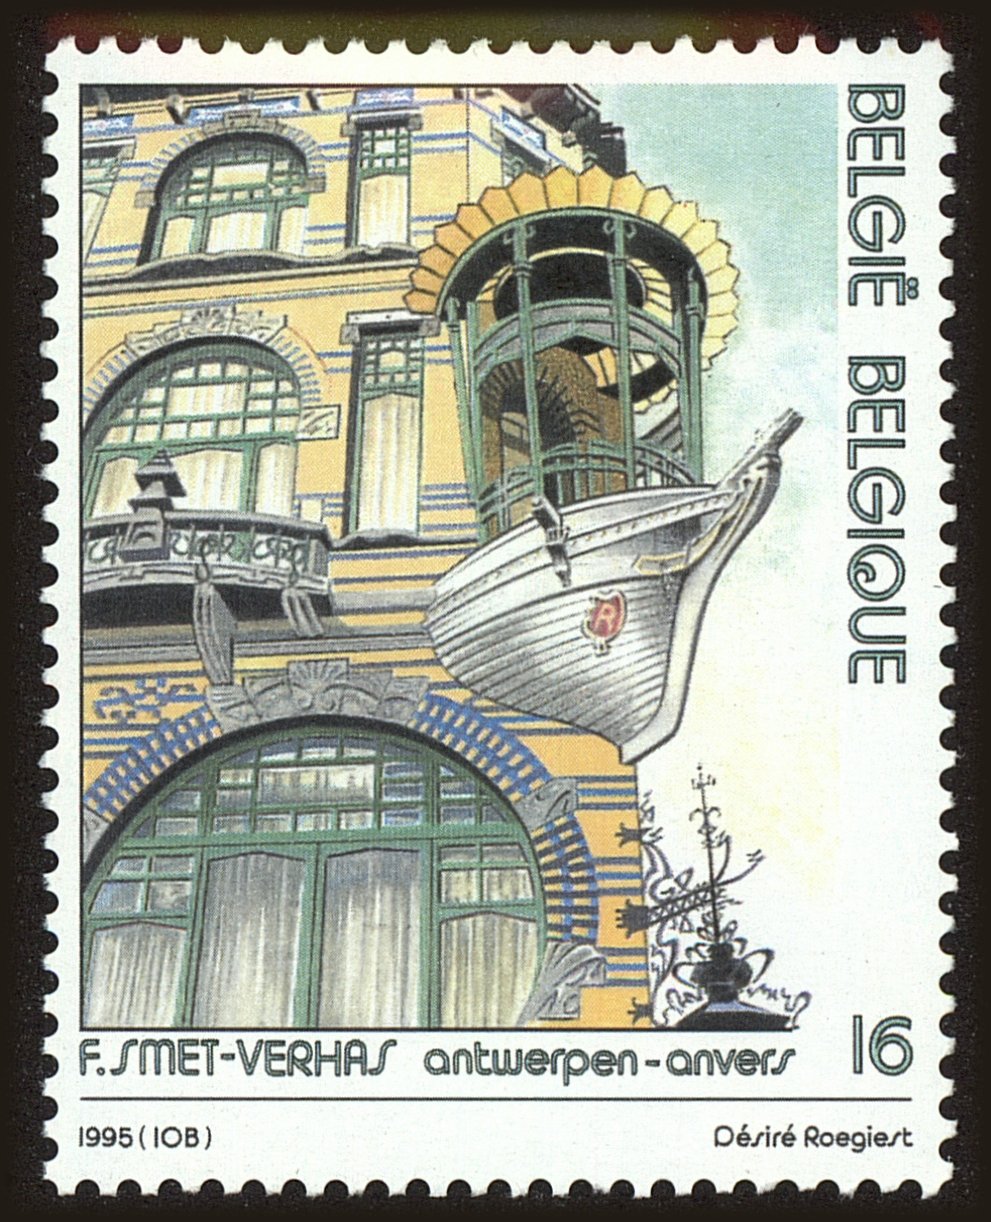 Front view of Belgium 1588 collectors stamp